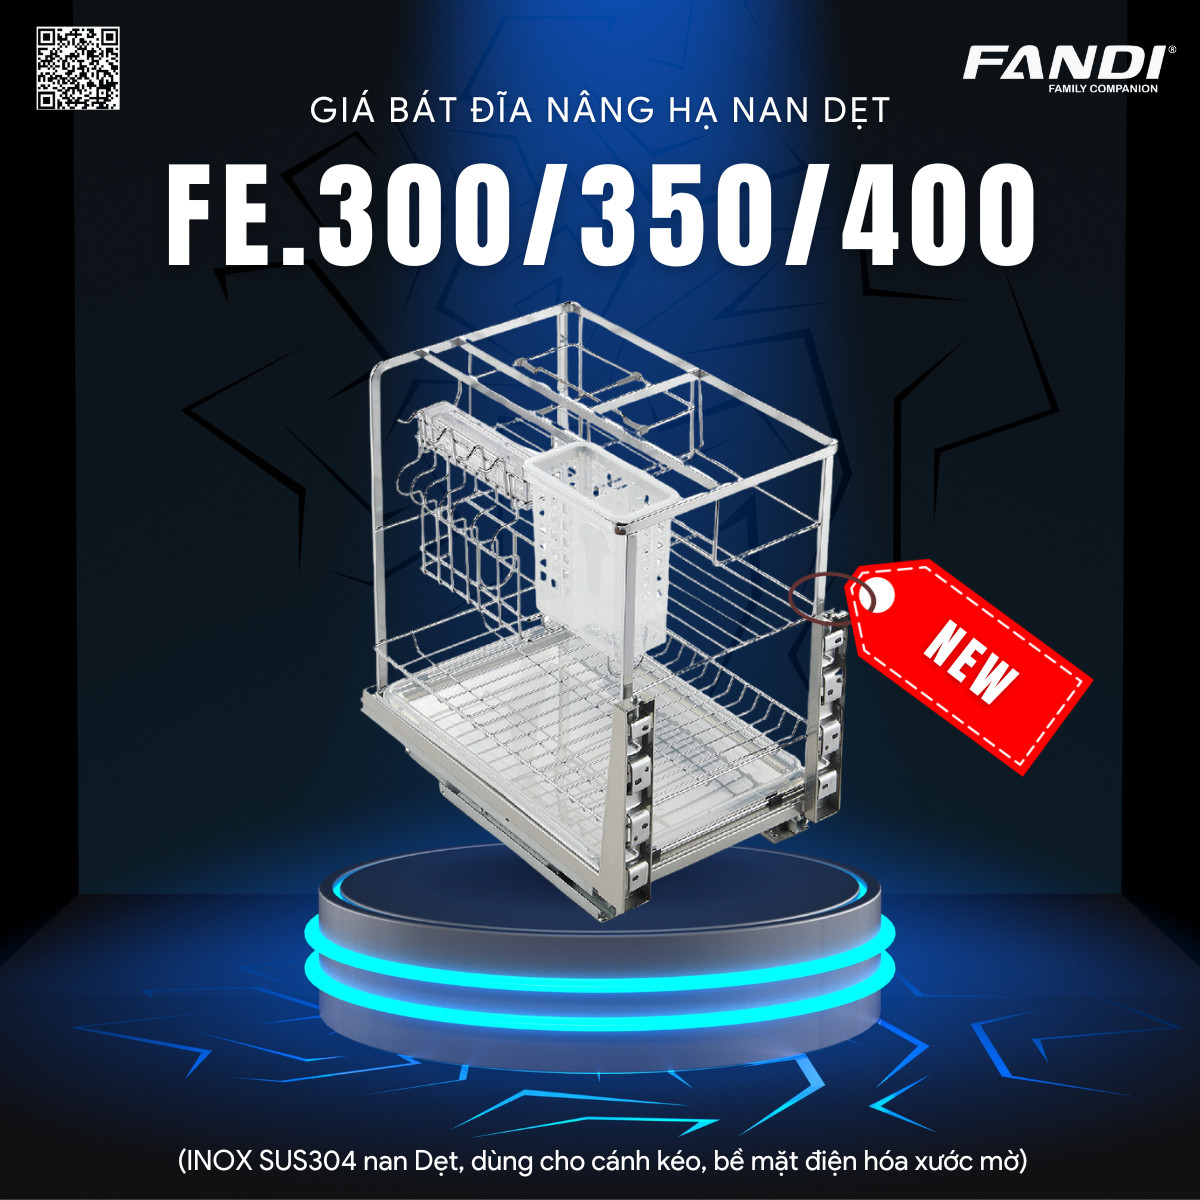 Fandi ra mắt sản phẩm giá đựng dao thớt nan dẹt FE.300/350/400